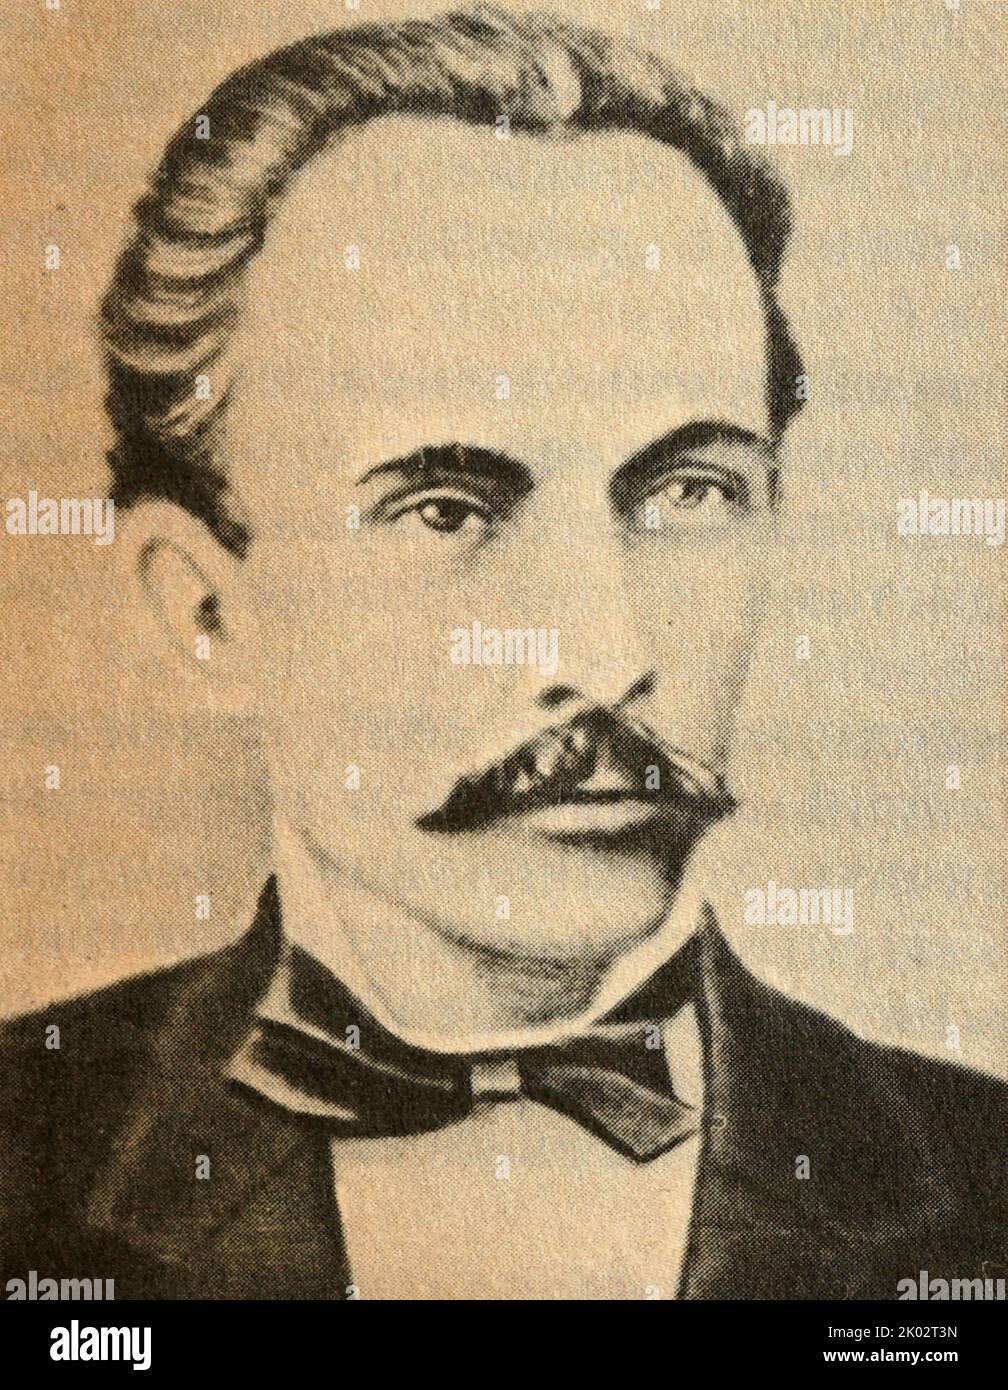 Dimitar Blagoev (1856-1924). Organizador de uno de los primeros grupos socialdemócratas de Rusia. Líder de la socialdemocracia revolucionaria búlgara y, más tarde, del Partido Comunista búlgaro. Foto de stock